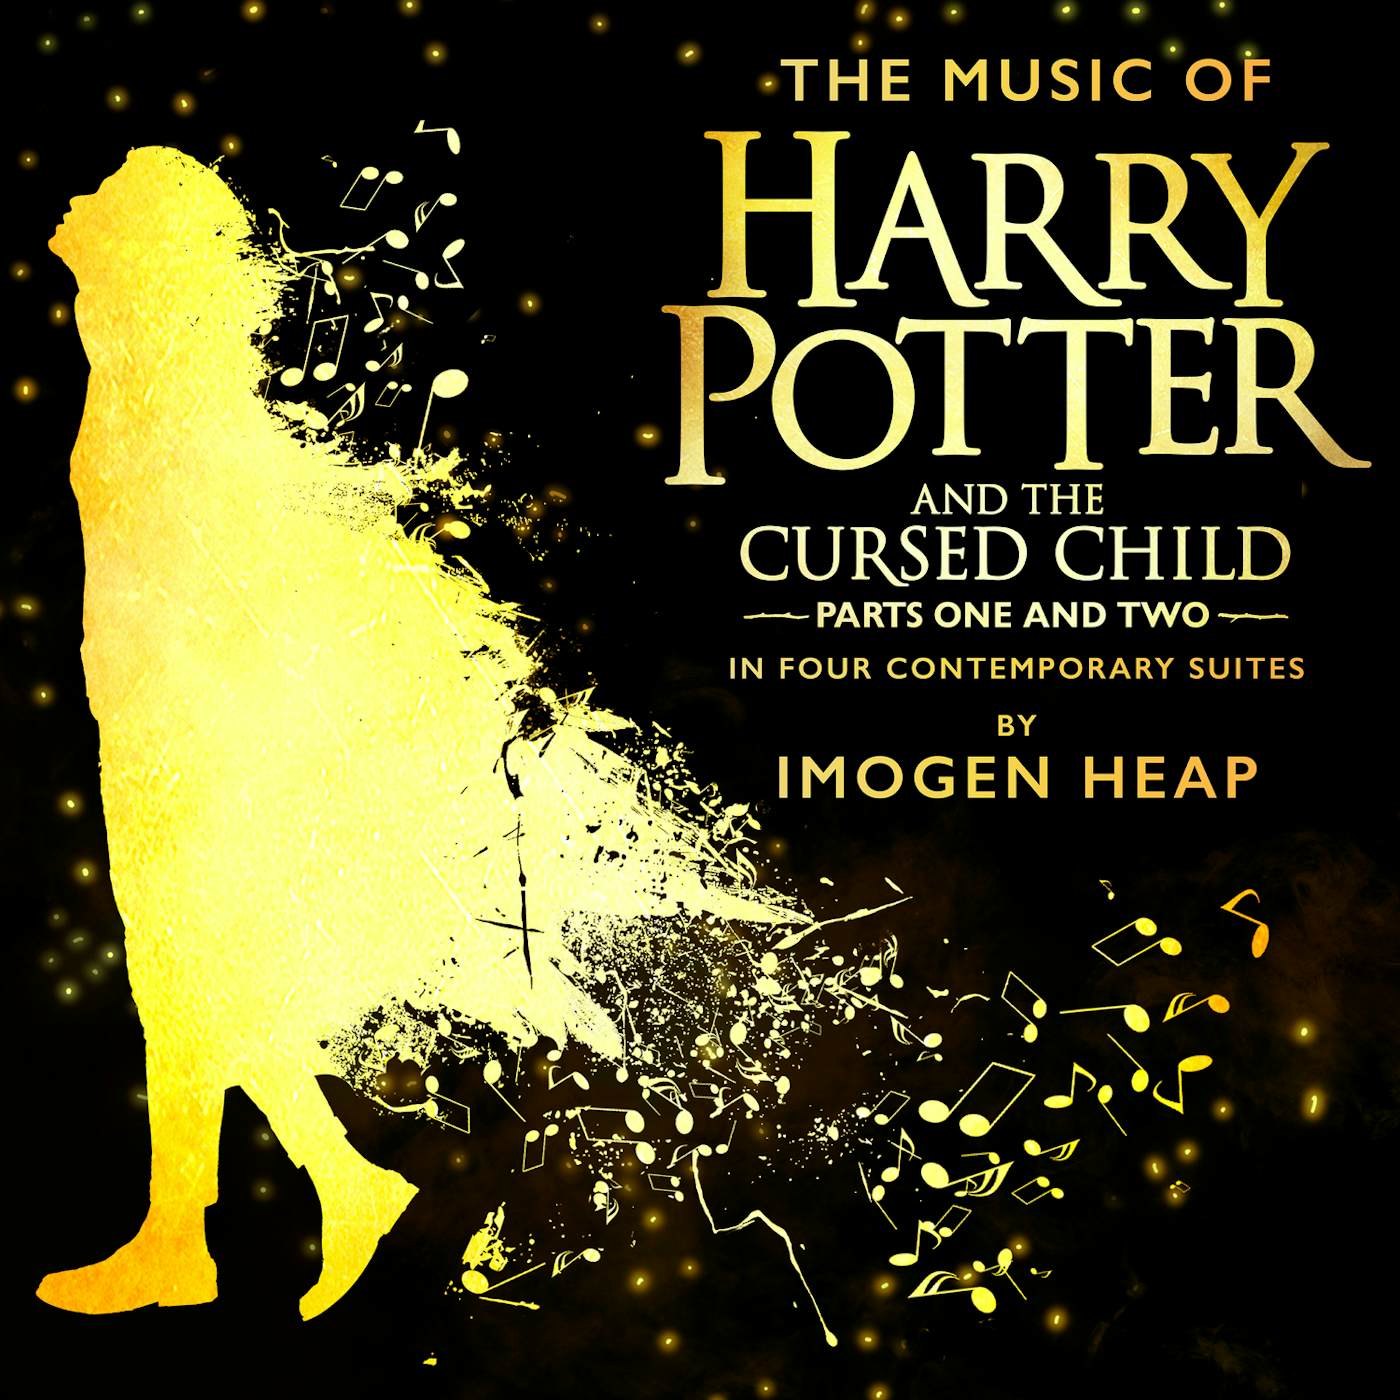 Imogen Heap MUSIC HARRY POTTER & CURSED CHILD 4 CONTEMP SUITES Vinyl Record